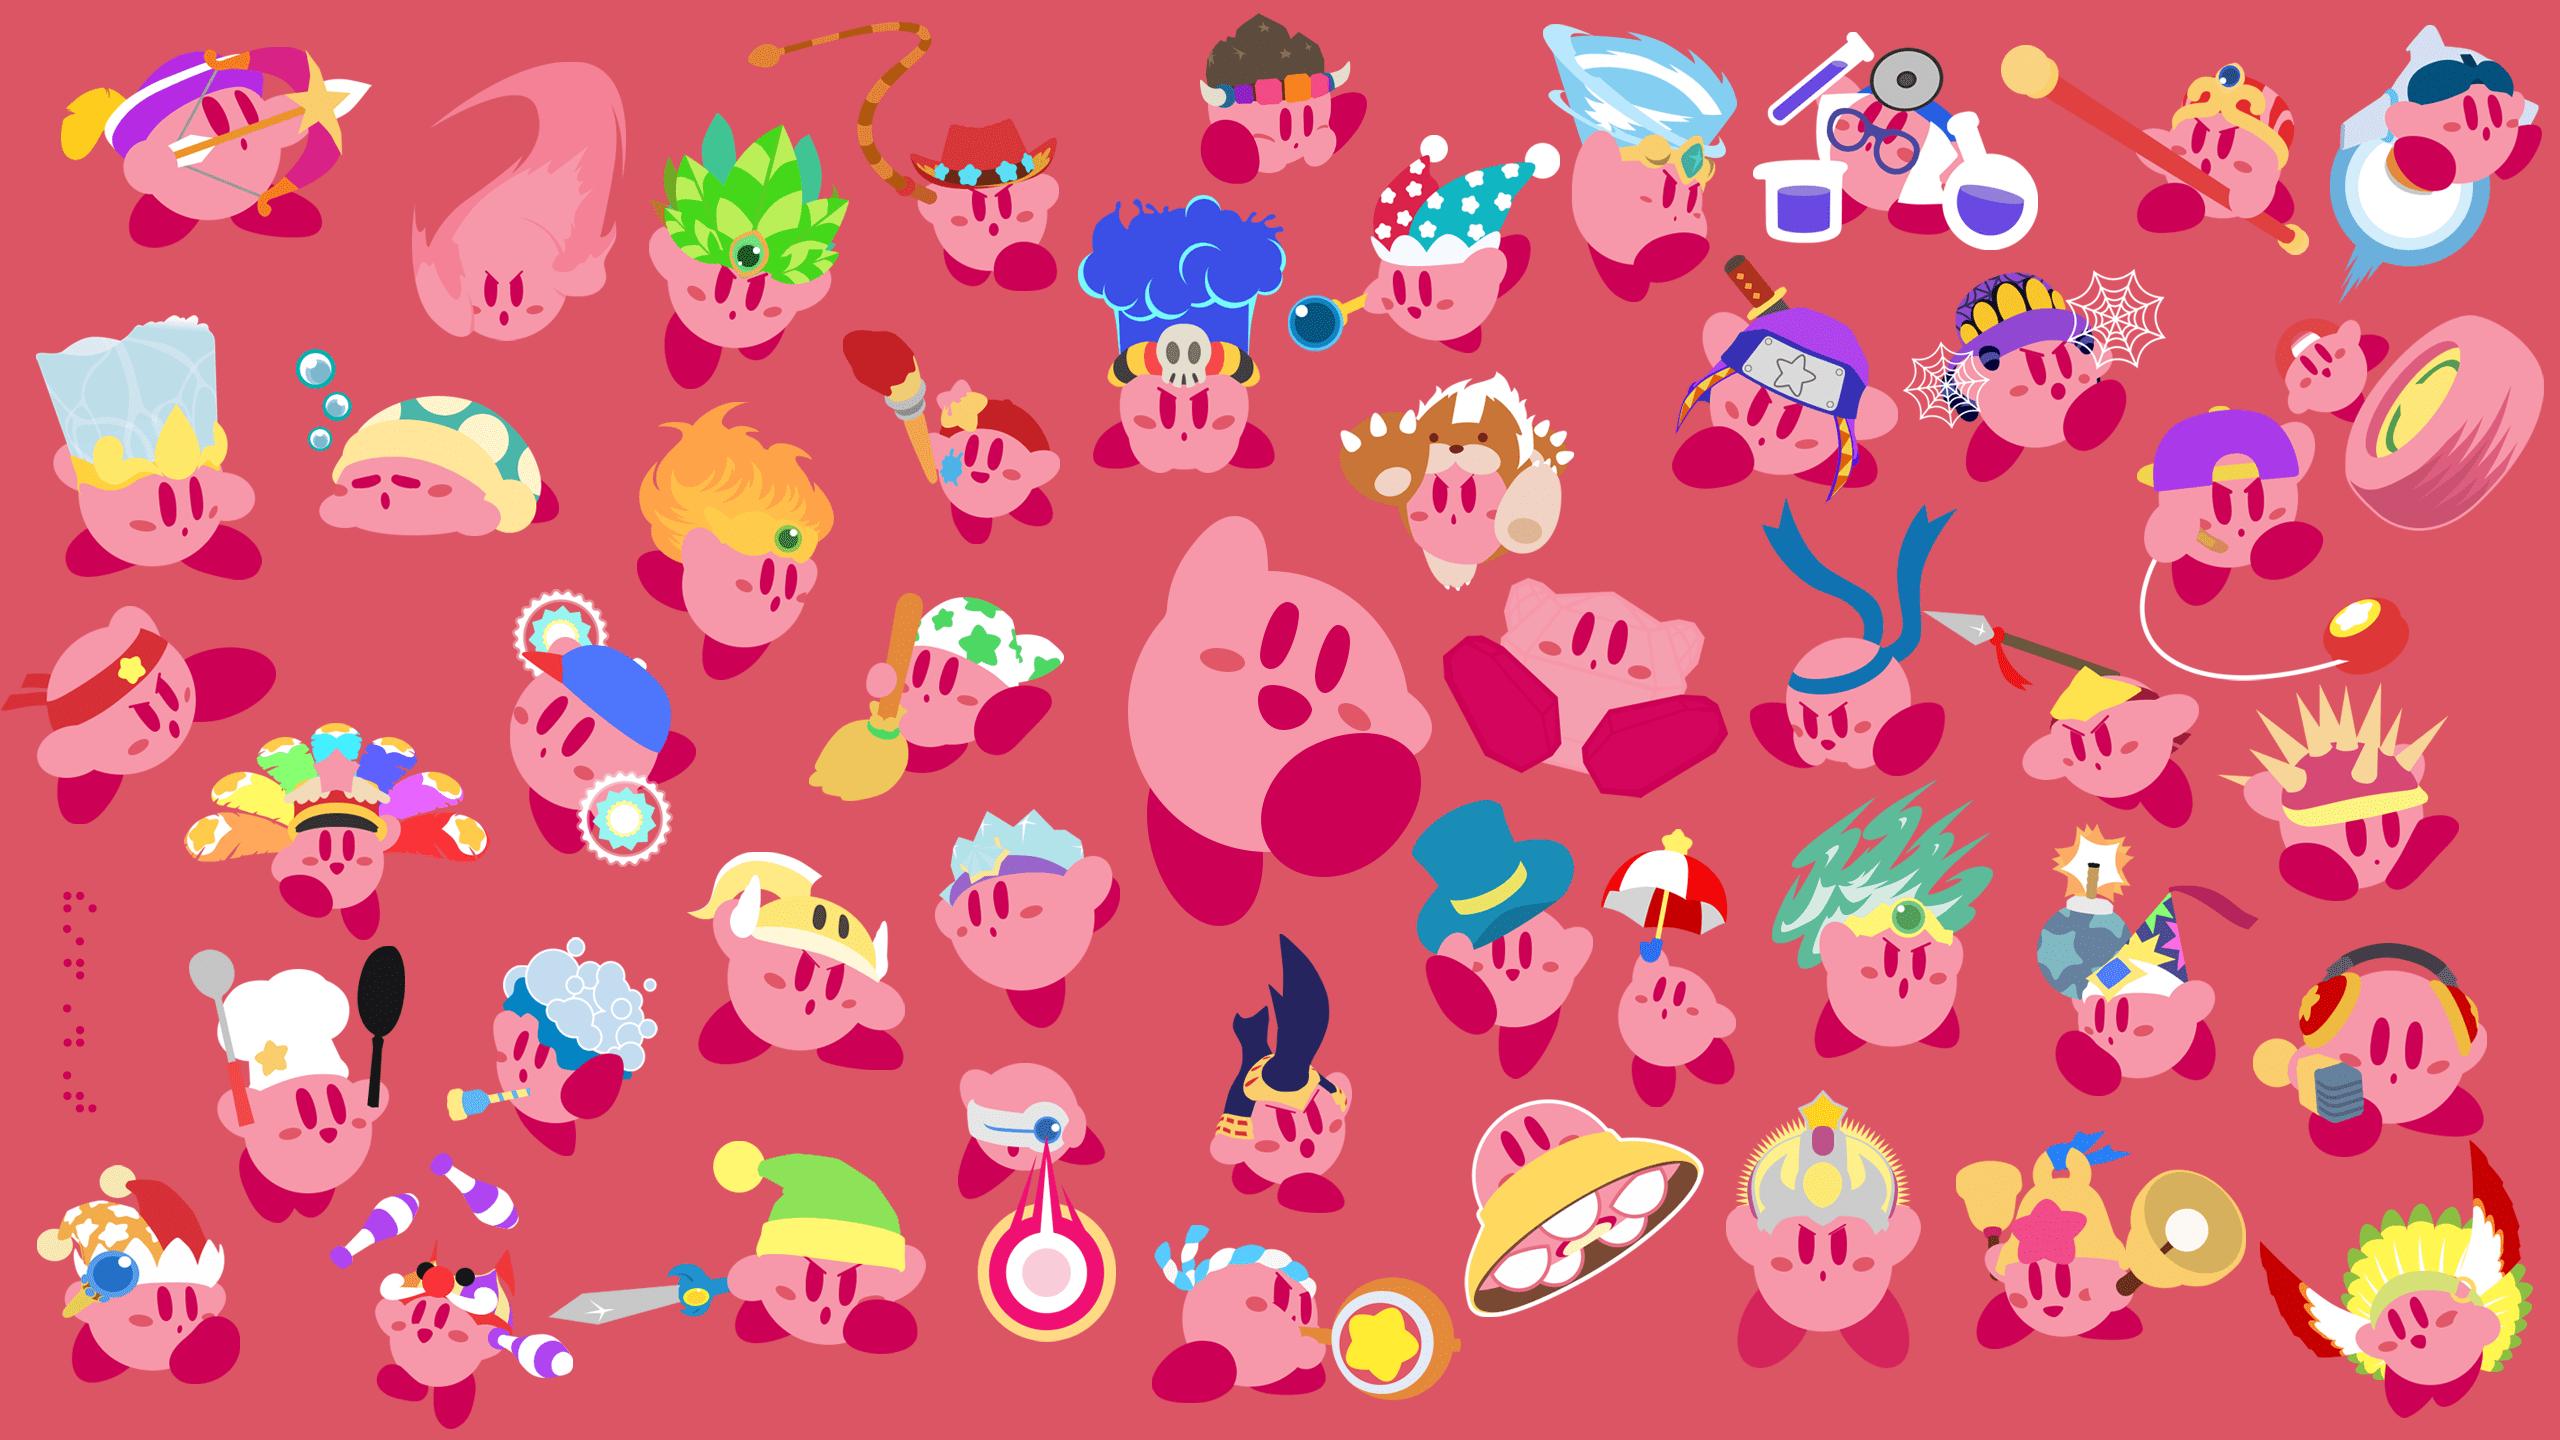 Kirby Desktop Wallpapers - Top Những Hình Ảnh Đẹp